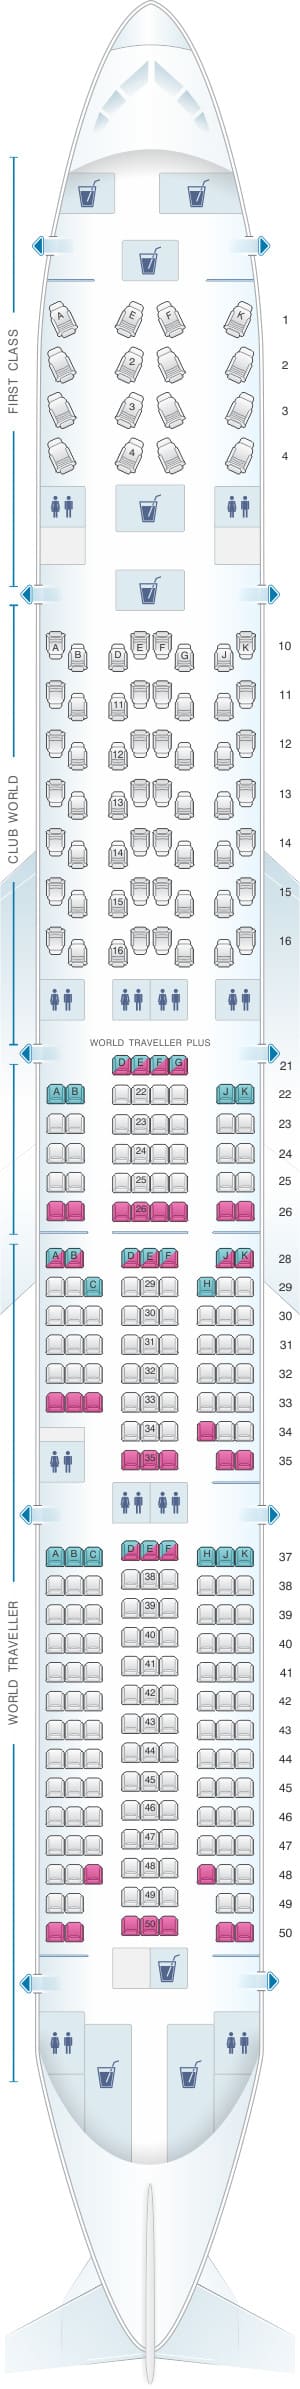 BA 777-300ER Seat Map